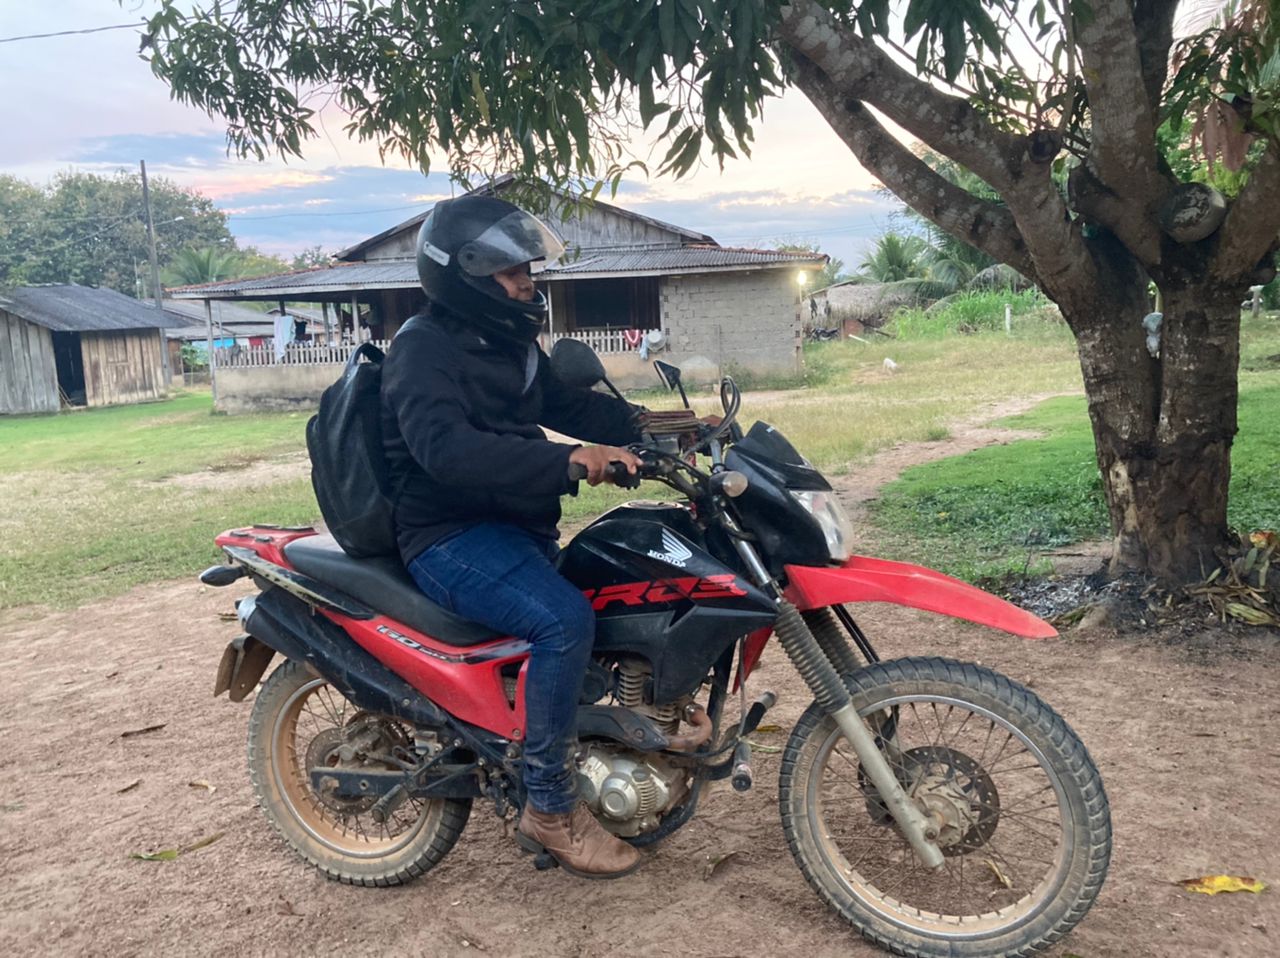 Oyxibo Itabira está em uma moto vermelha